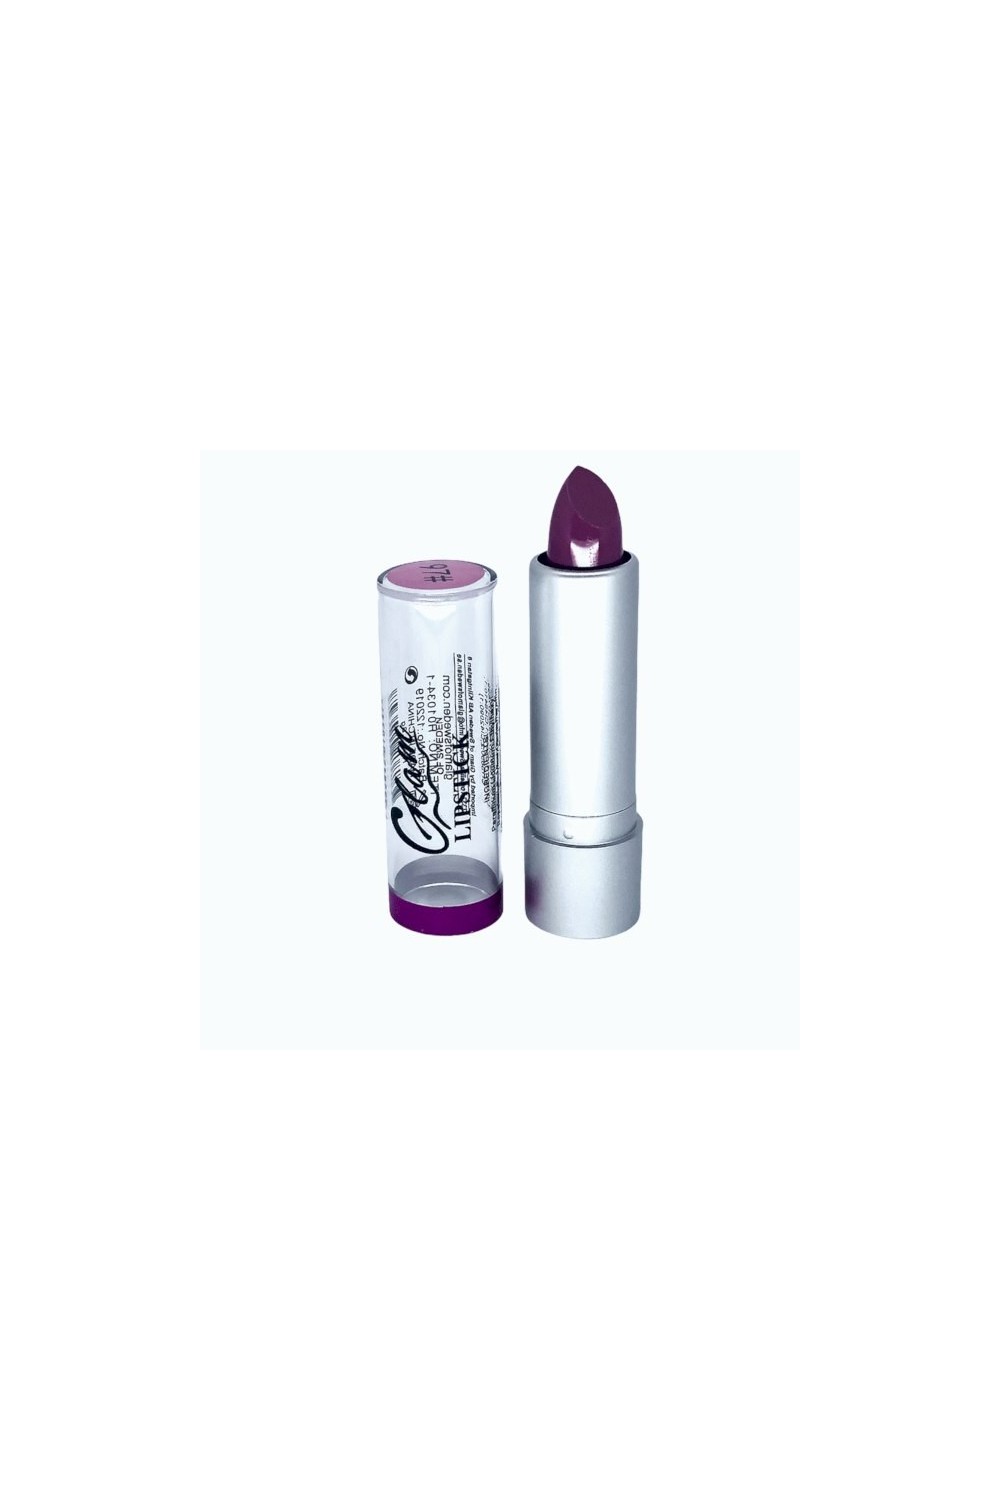 Glam Of Sweden Silver Lipstick 97-Midnight Plum 3,8g